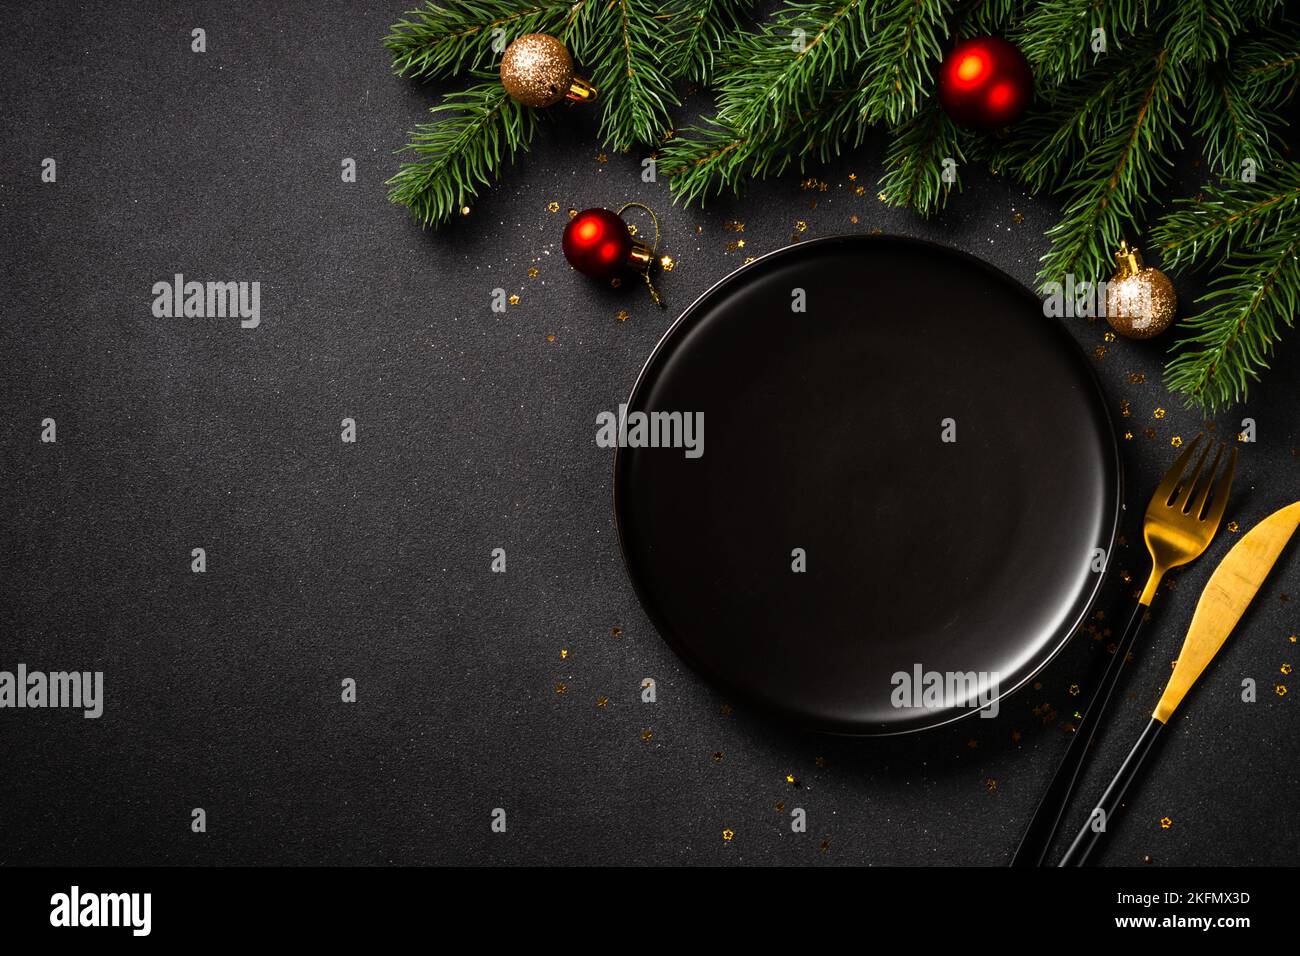 Table de Noël avec assiette noire, couverts dorés et décorations de Noël. Banque D'Images